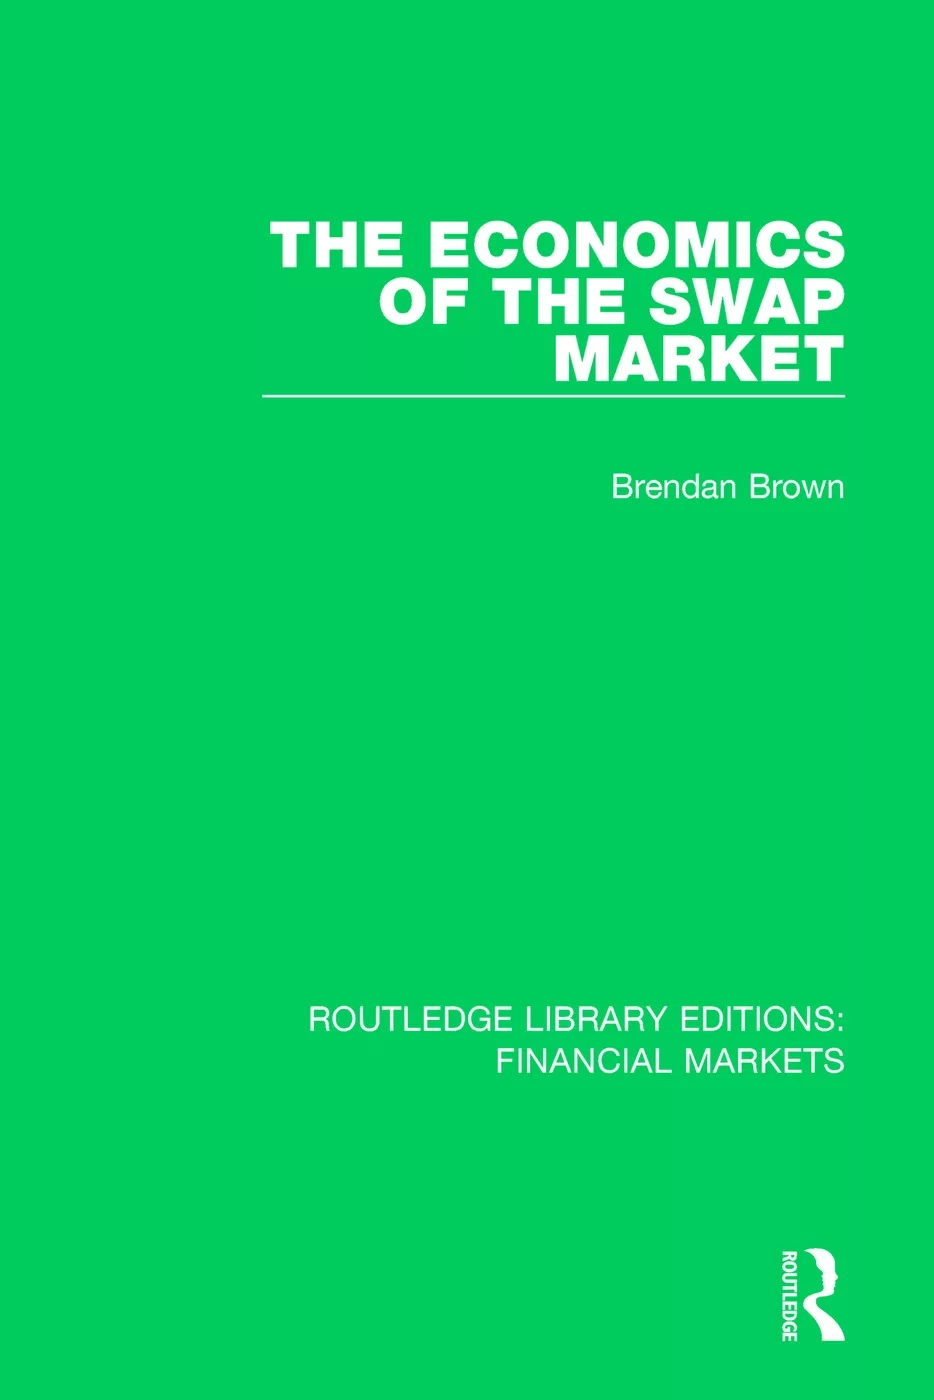 The Economics of the Swap Market